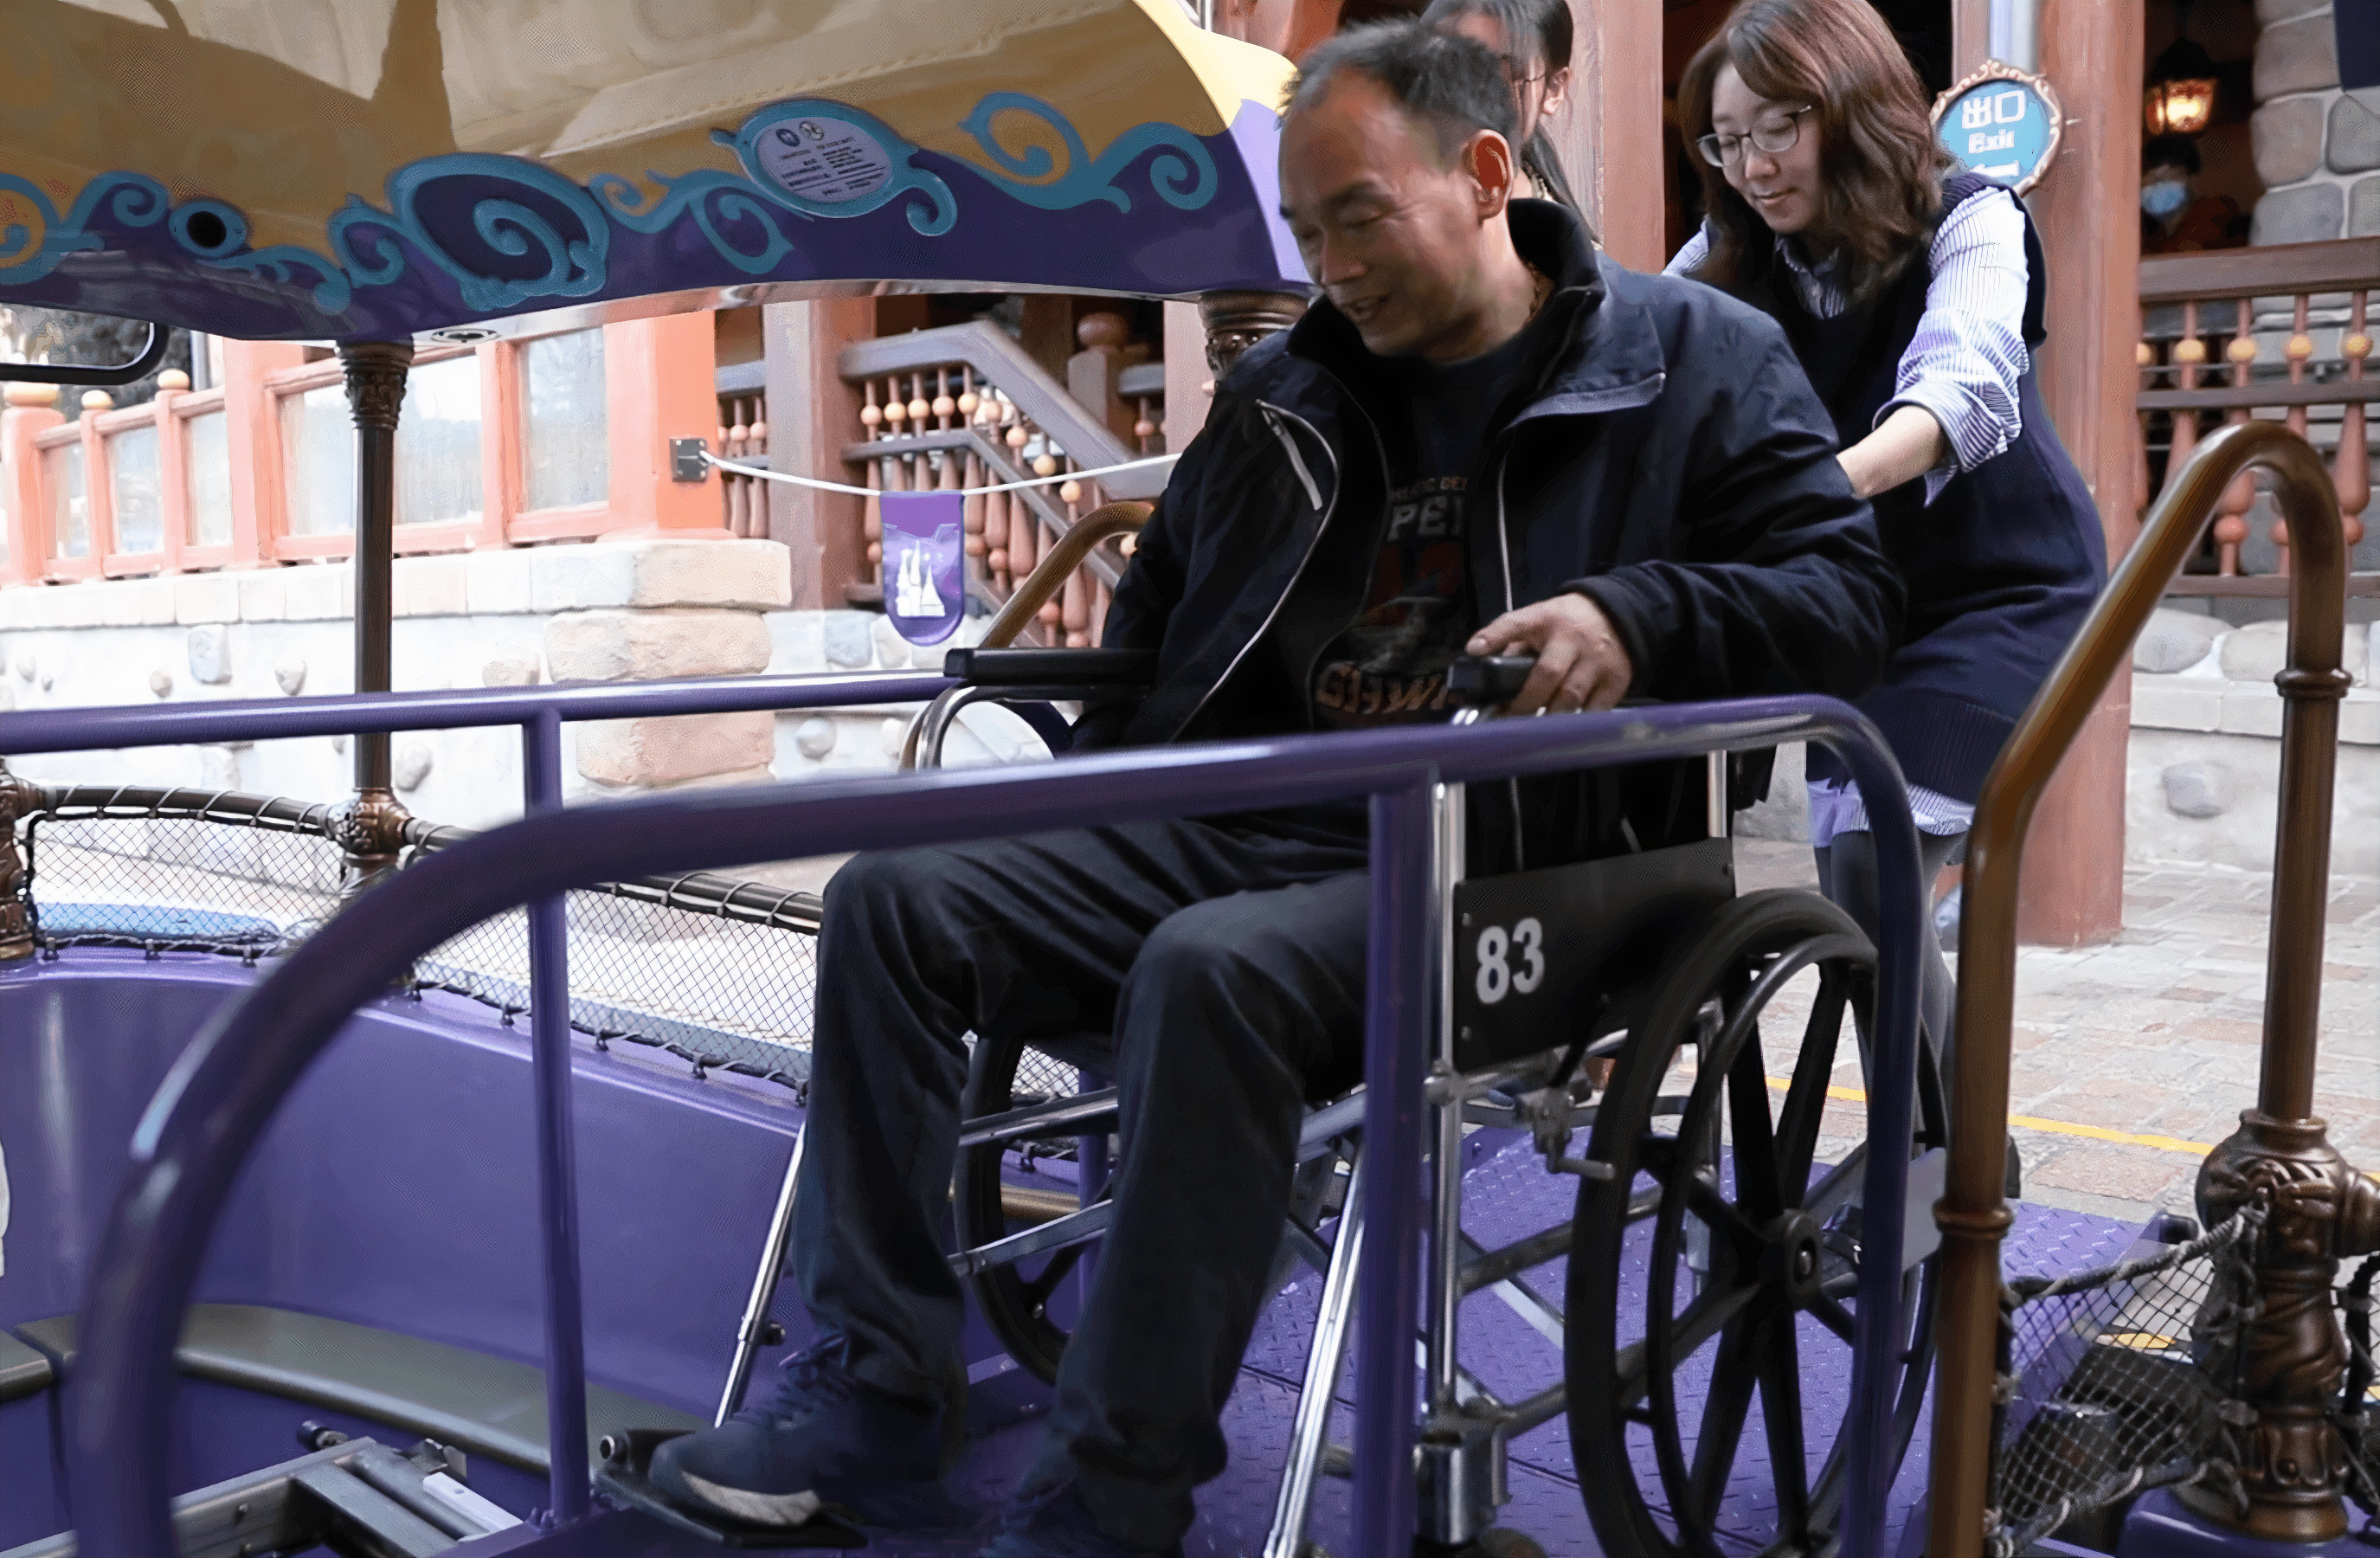 A woman pushing a man in a wheelchair.